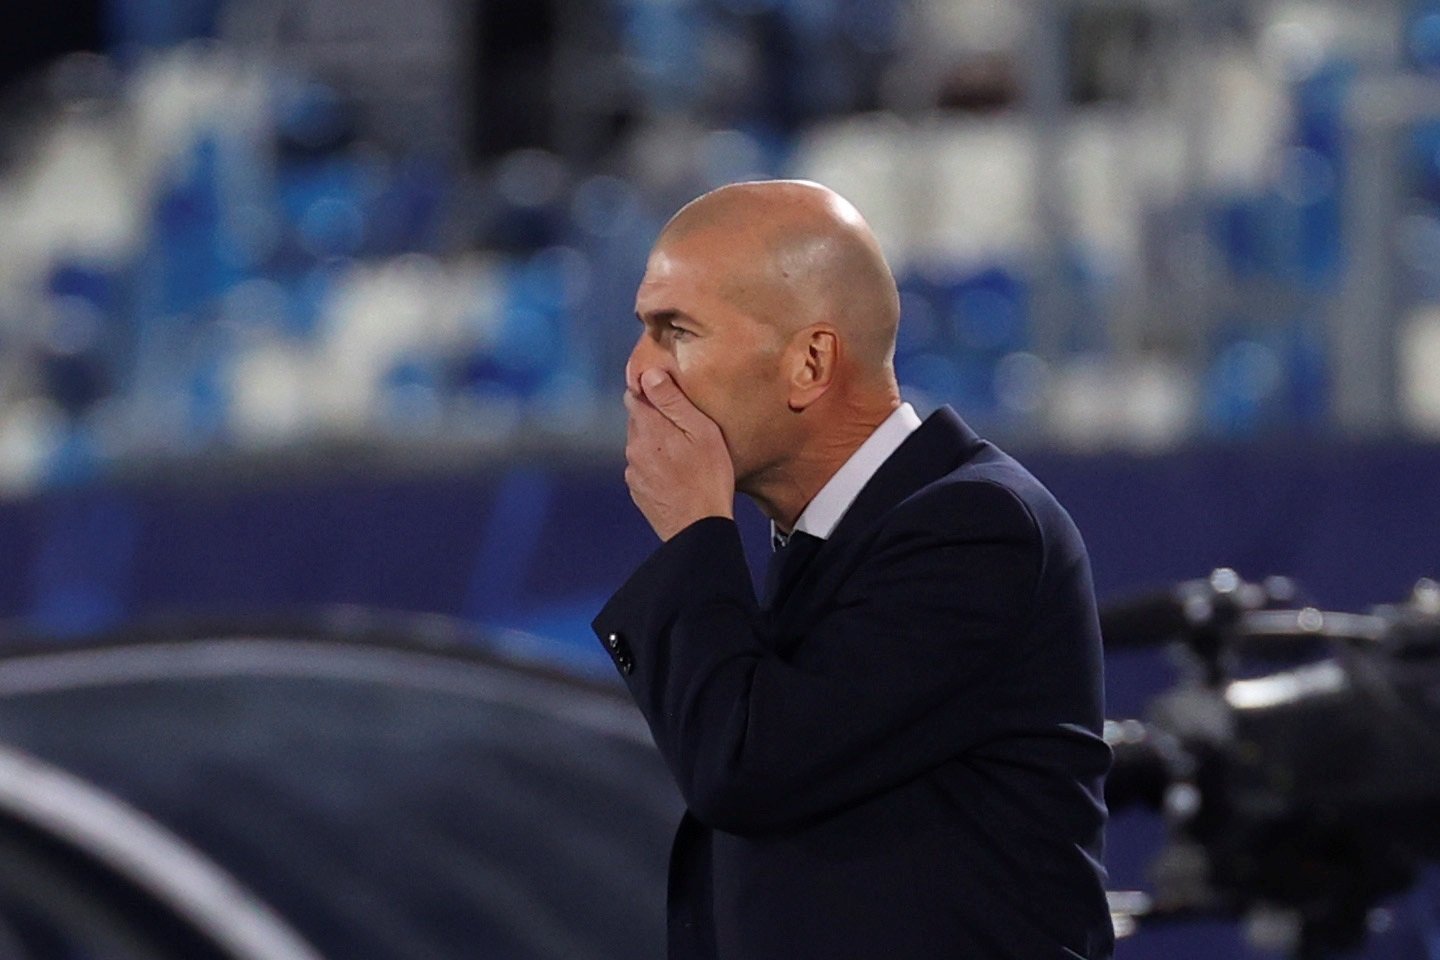 Zidane va recomanar el fitxatge quan costava 3,5 milions i ara demanen 80 milions a Florentino Pérez